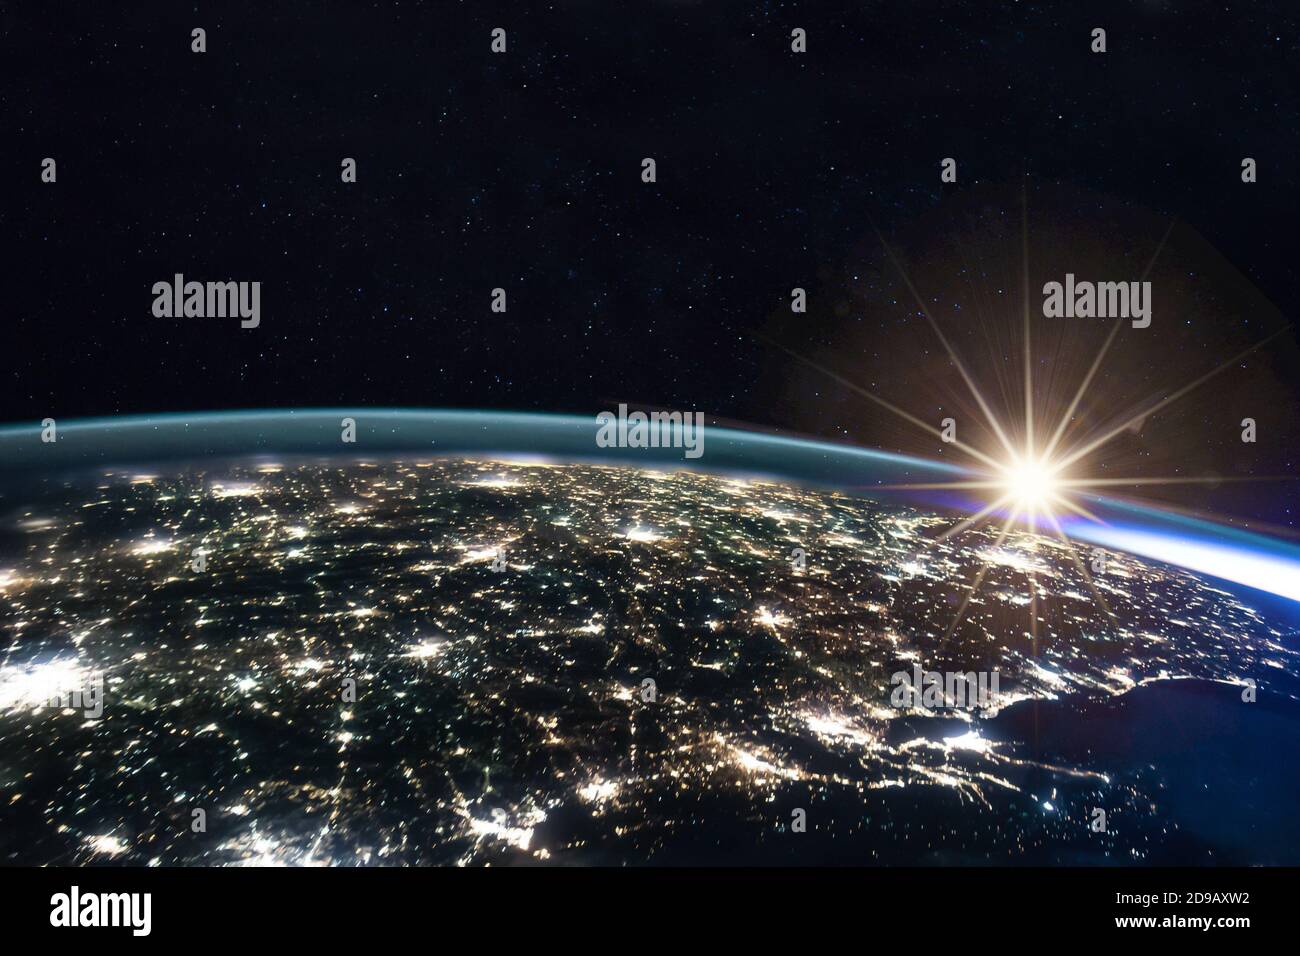 Immagine composita del sole che sorge sulla terra vista dallo spazio con le luci delle città illuminate di notte. Attività umane, gas serra emissi Foto Stock